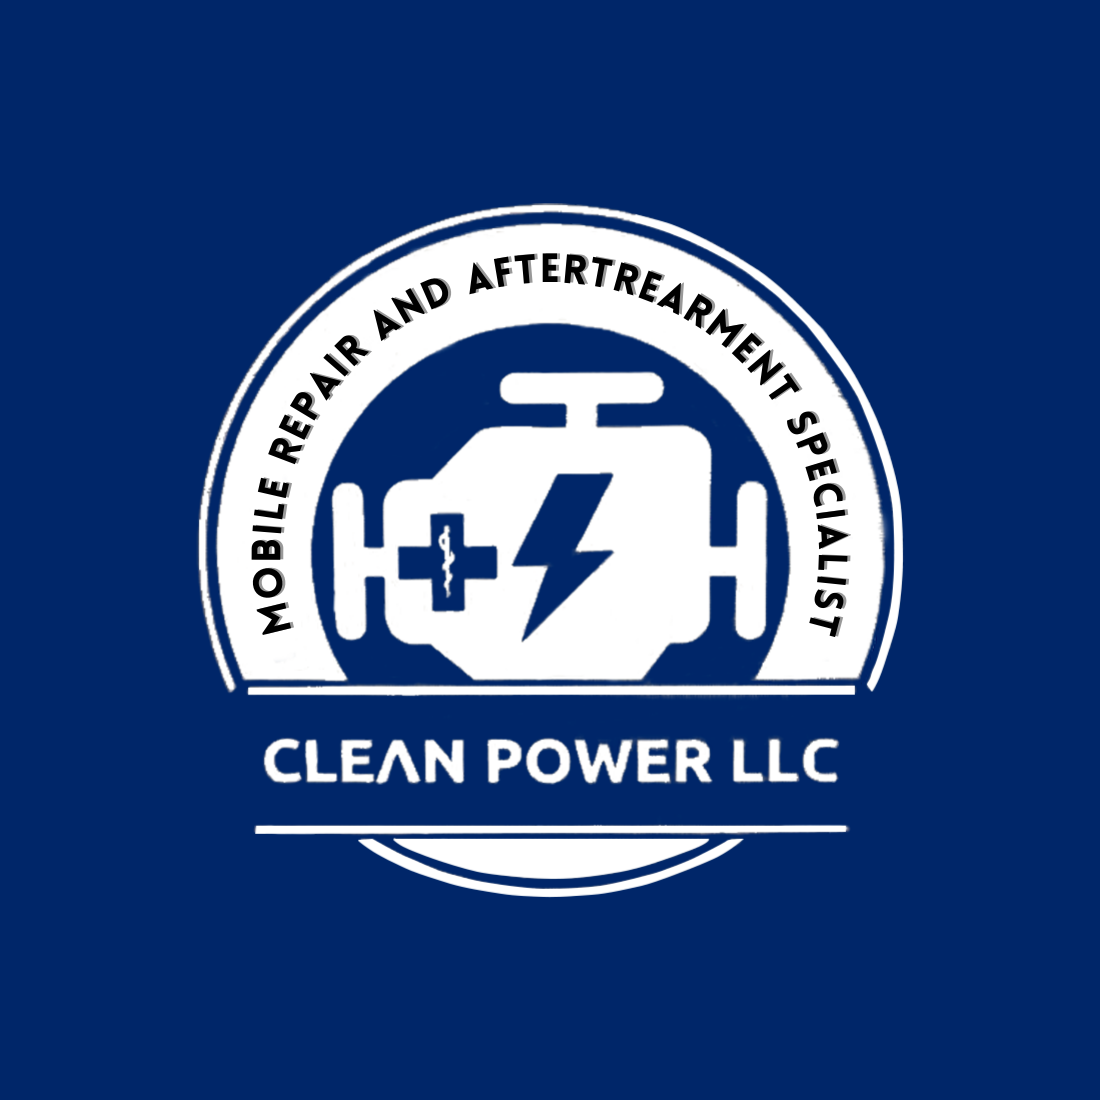 Clean Power LLC